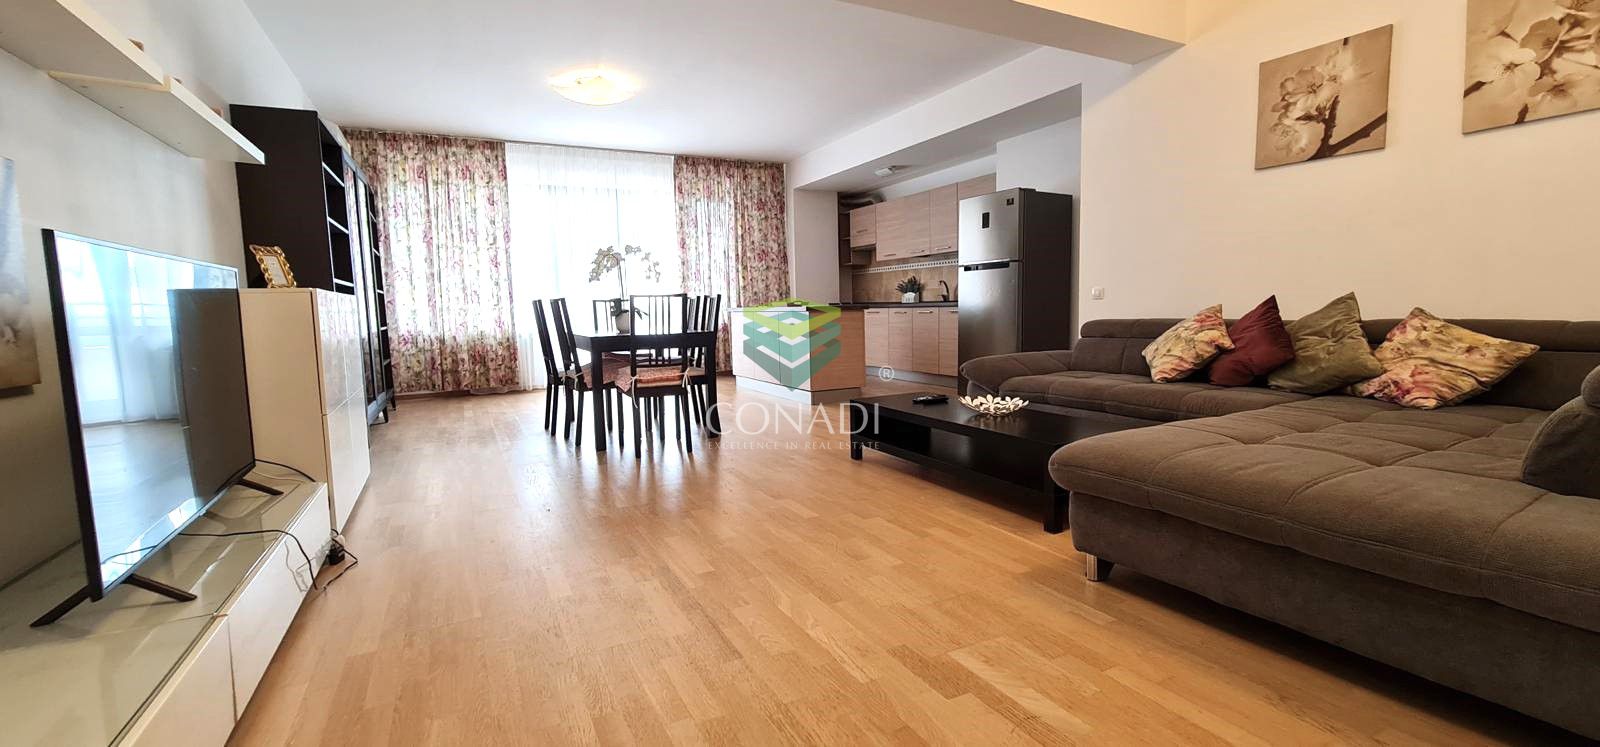 Baneasa - Iancu Nicolae, 4-room apartment for rent, 143 sq.m